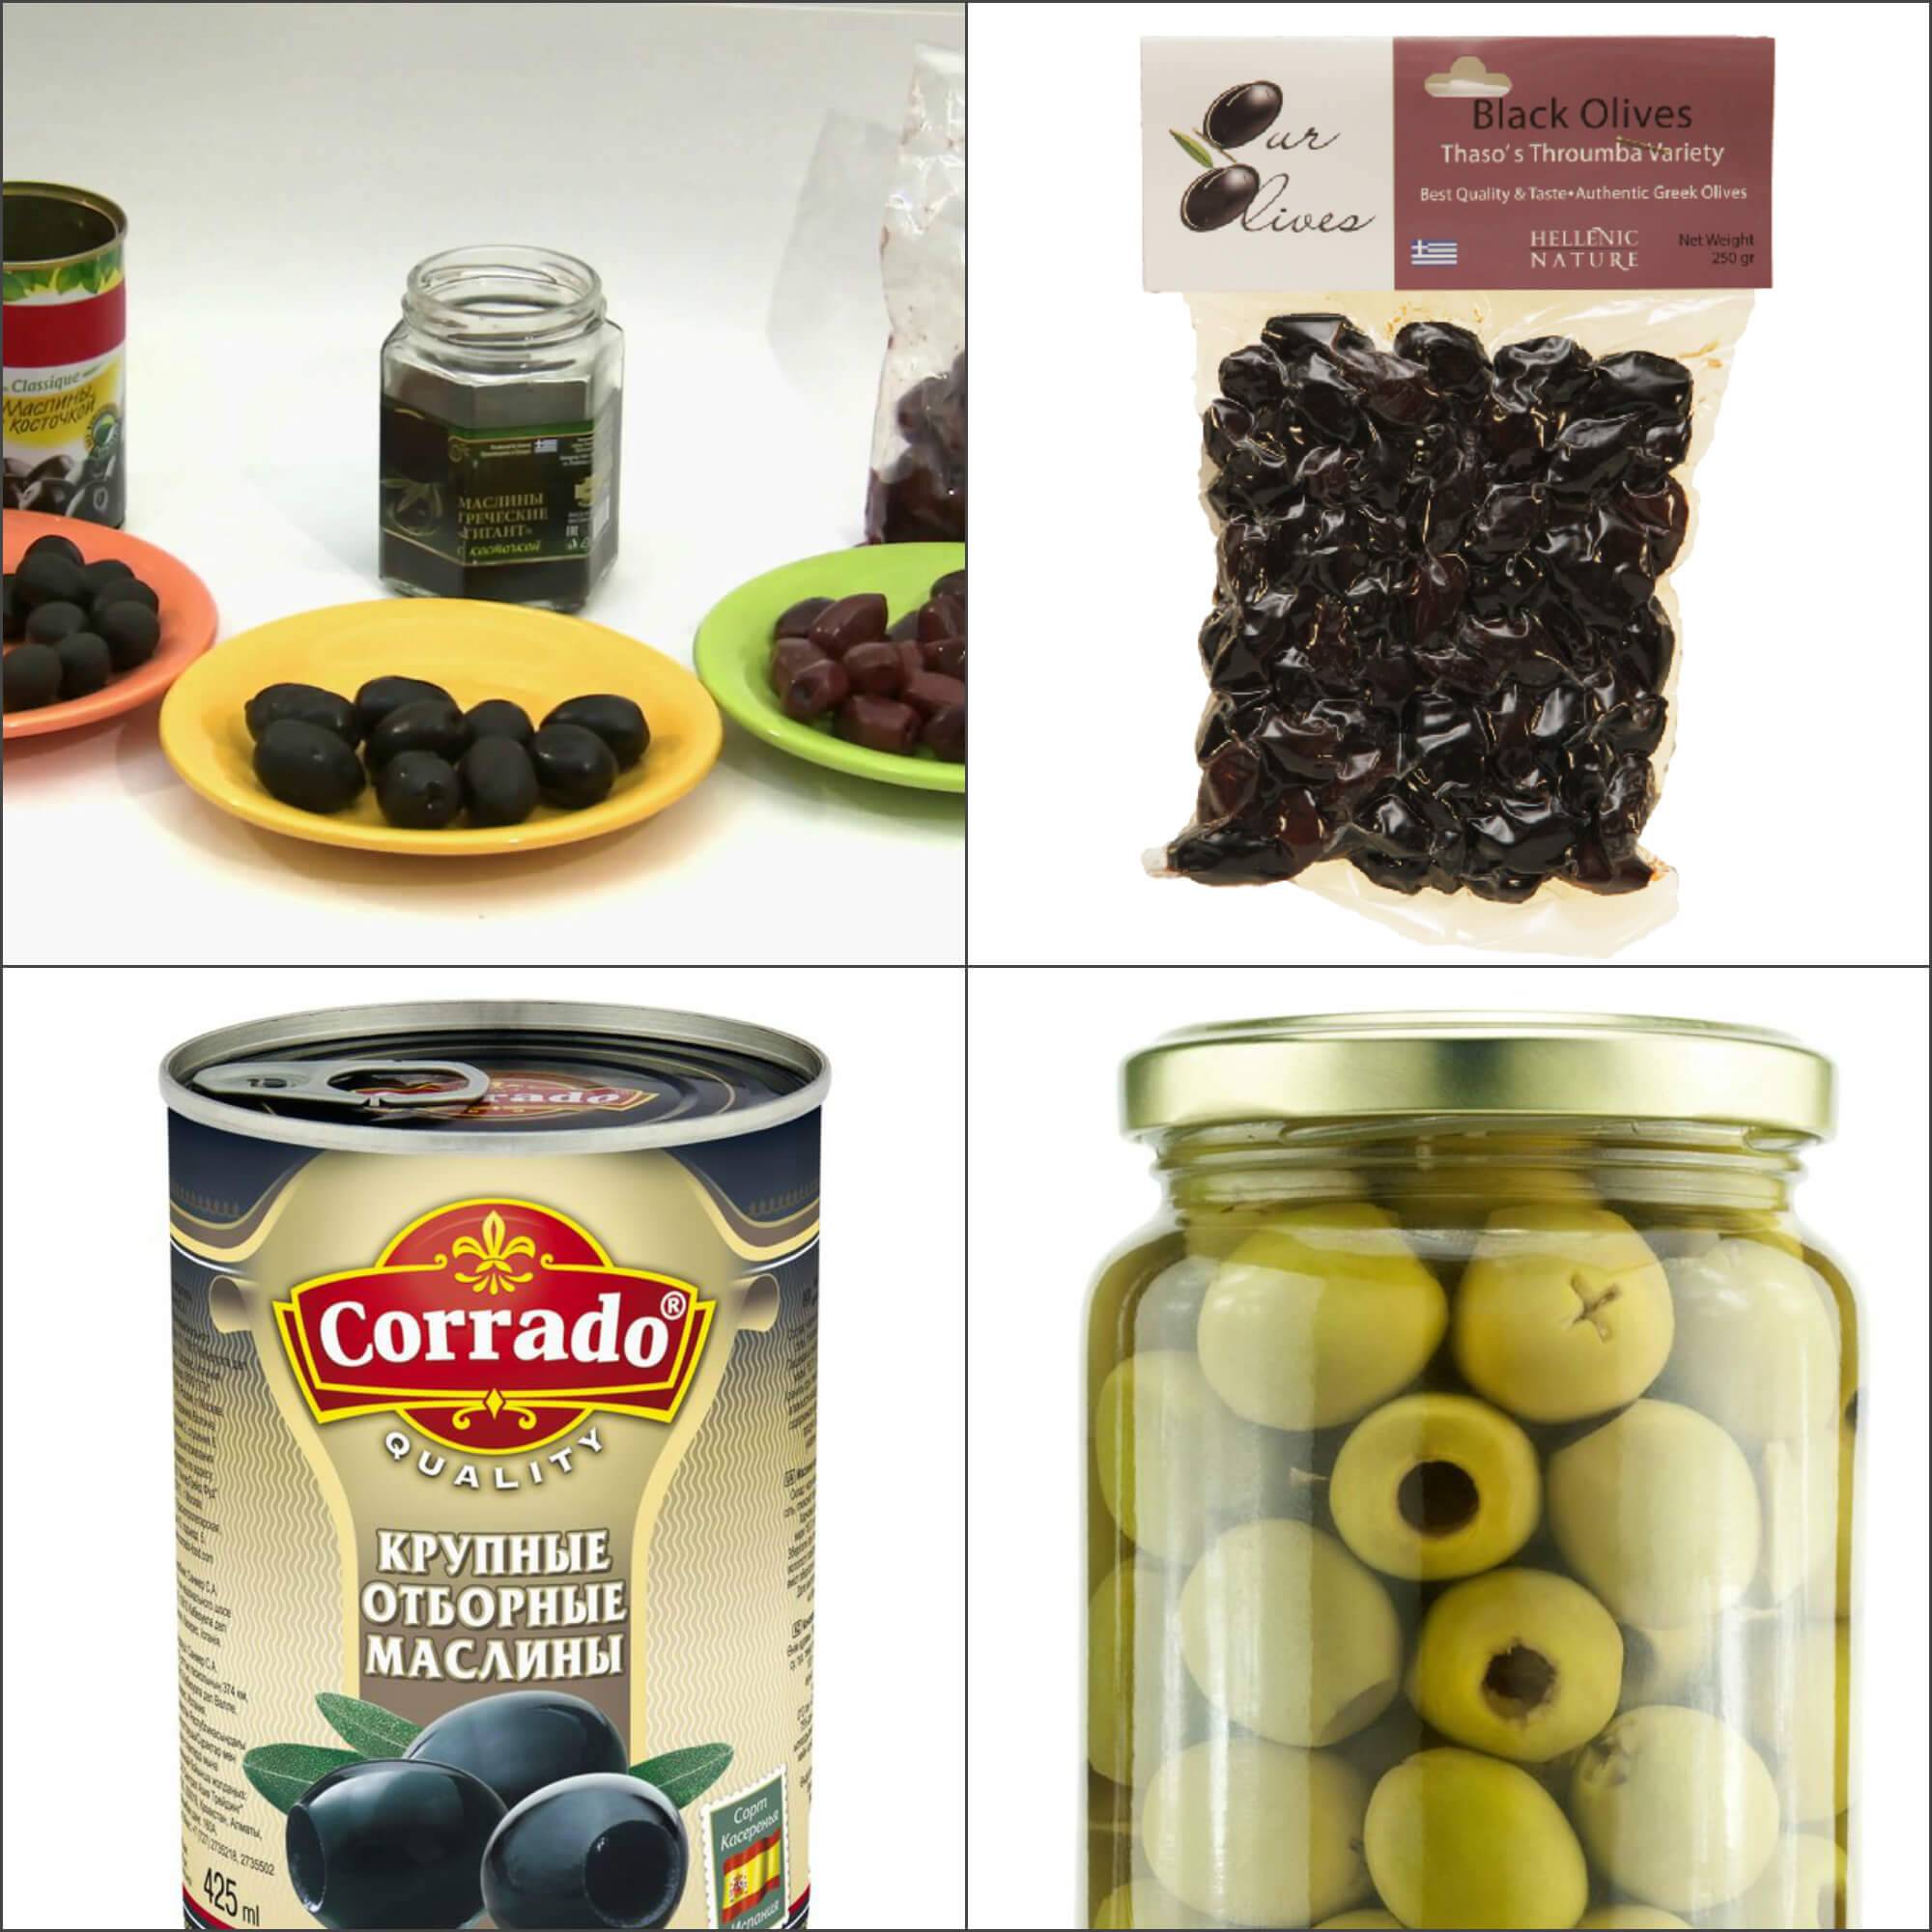 Оливки (маслины) — описание, полезные и вредные свойства, состав, калорийность, фото, рецепты приготовления